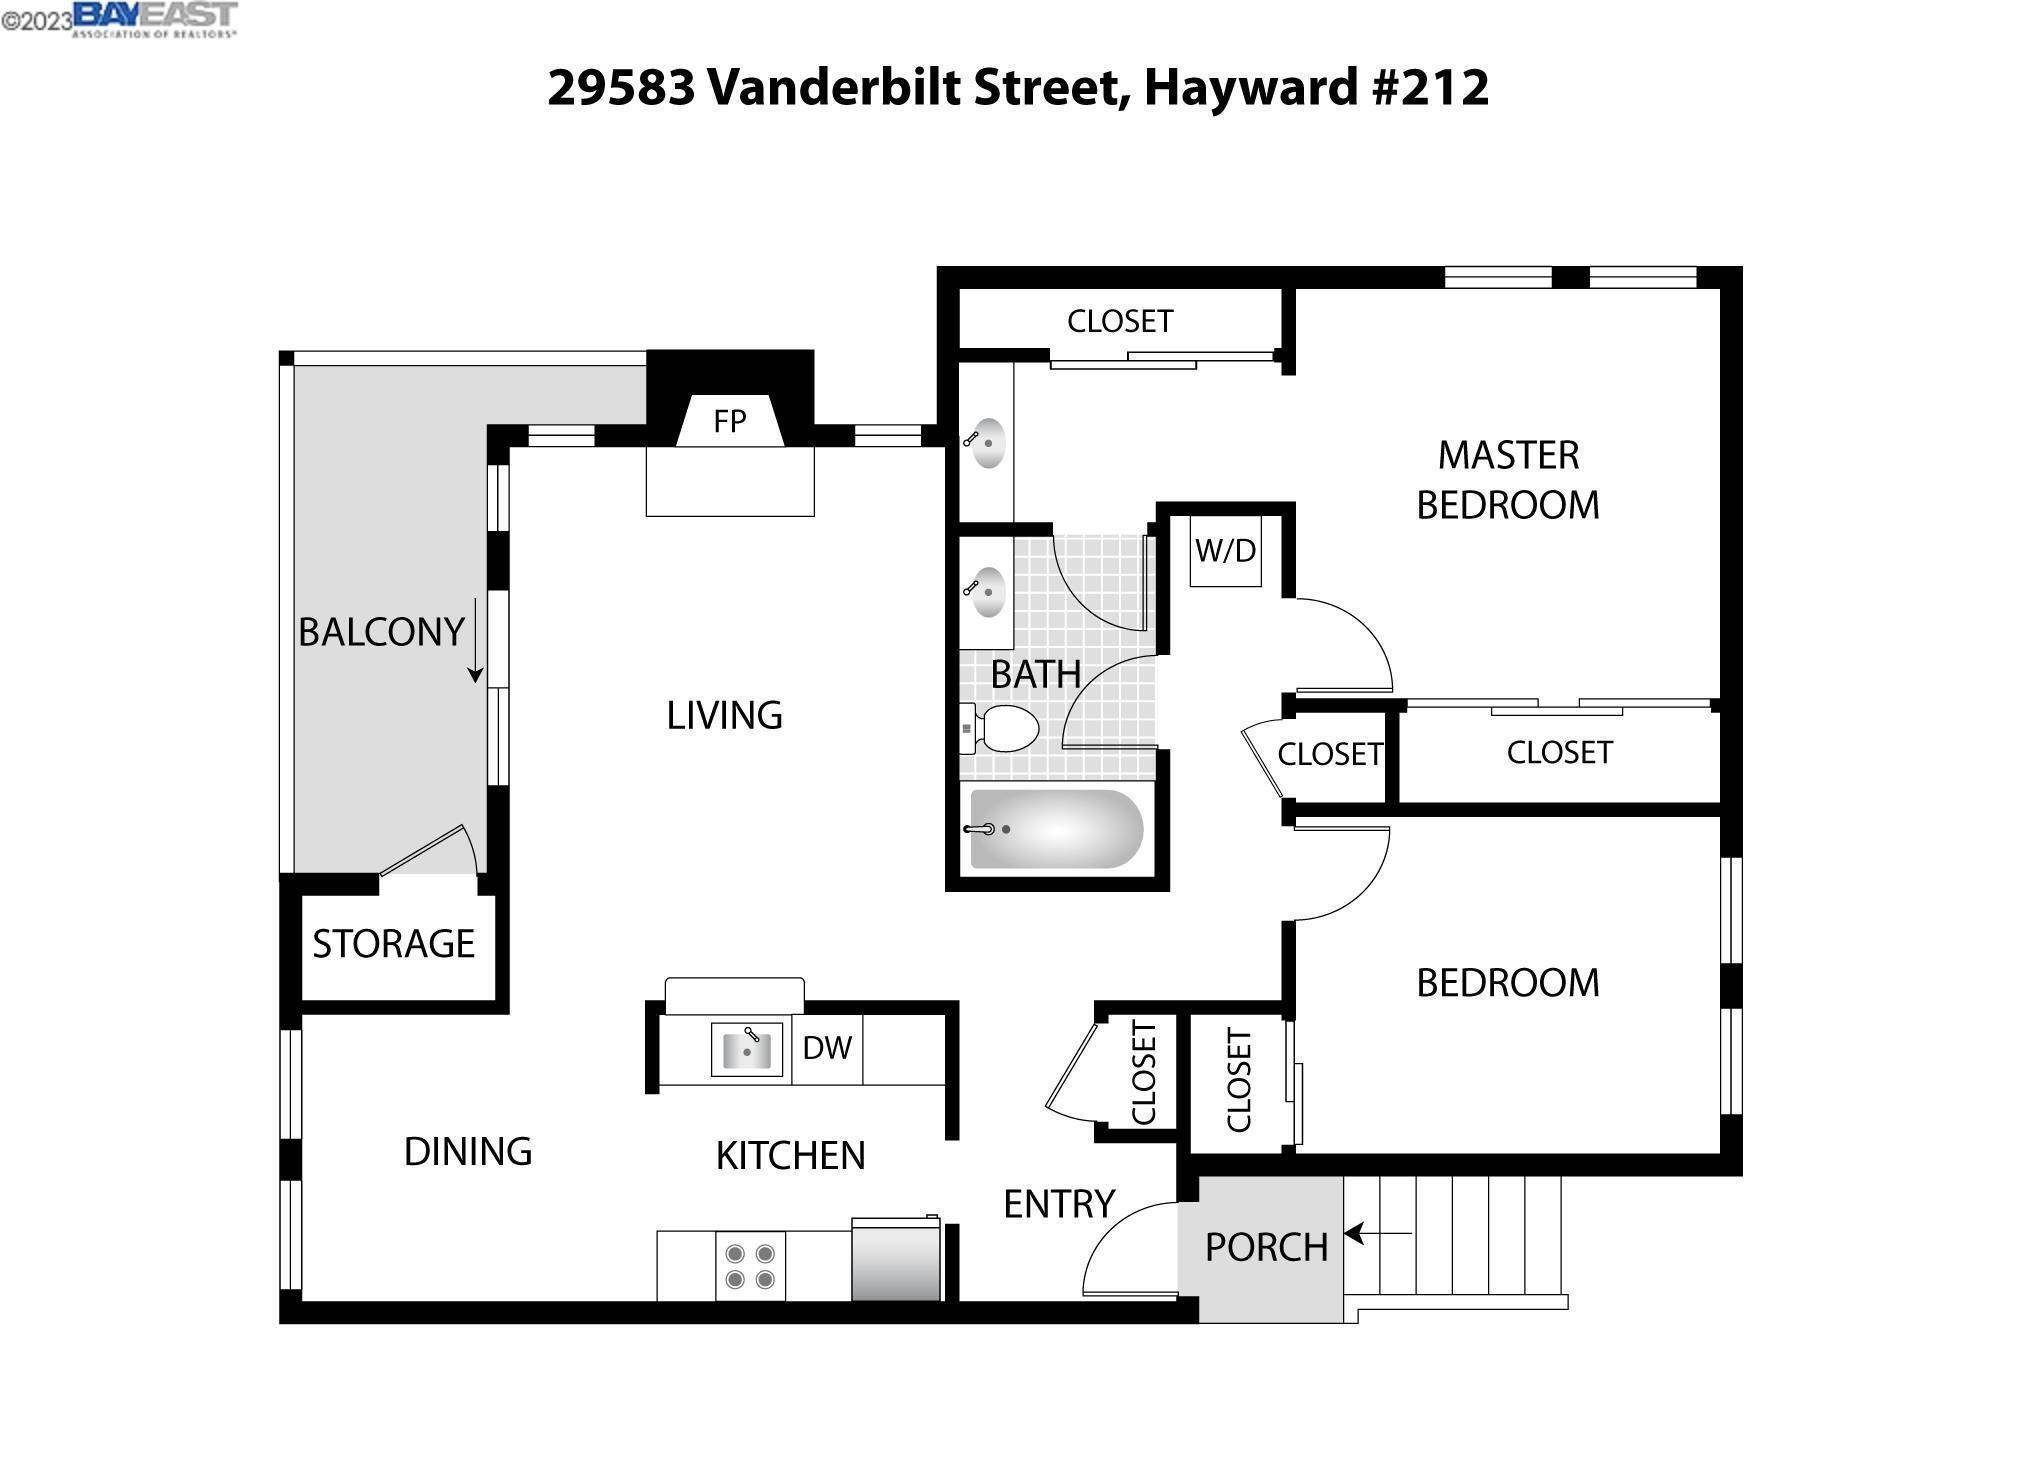 31. Condominium at Hayward, CA 94544